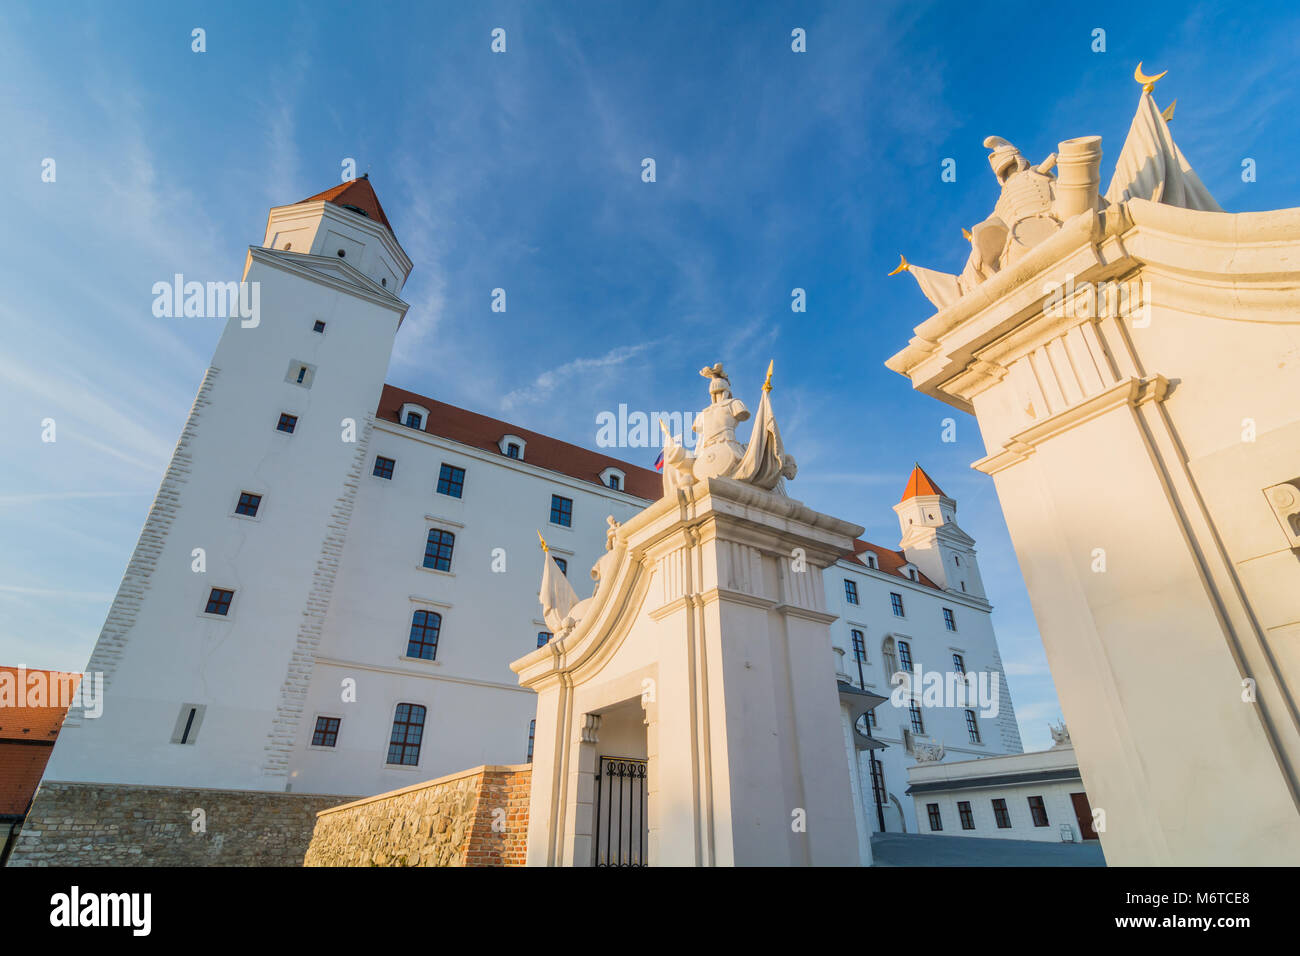 The Hrad castle in Bratislava, the Slovak capital Stock Photo